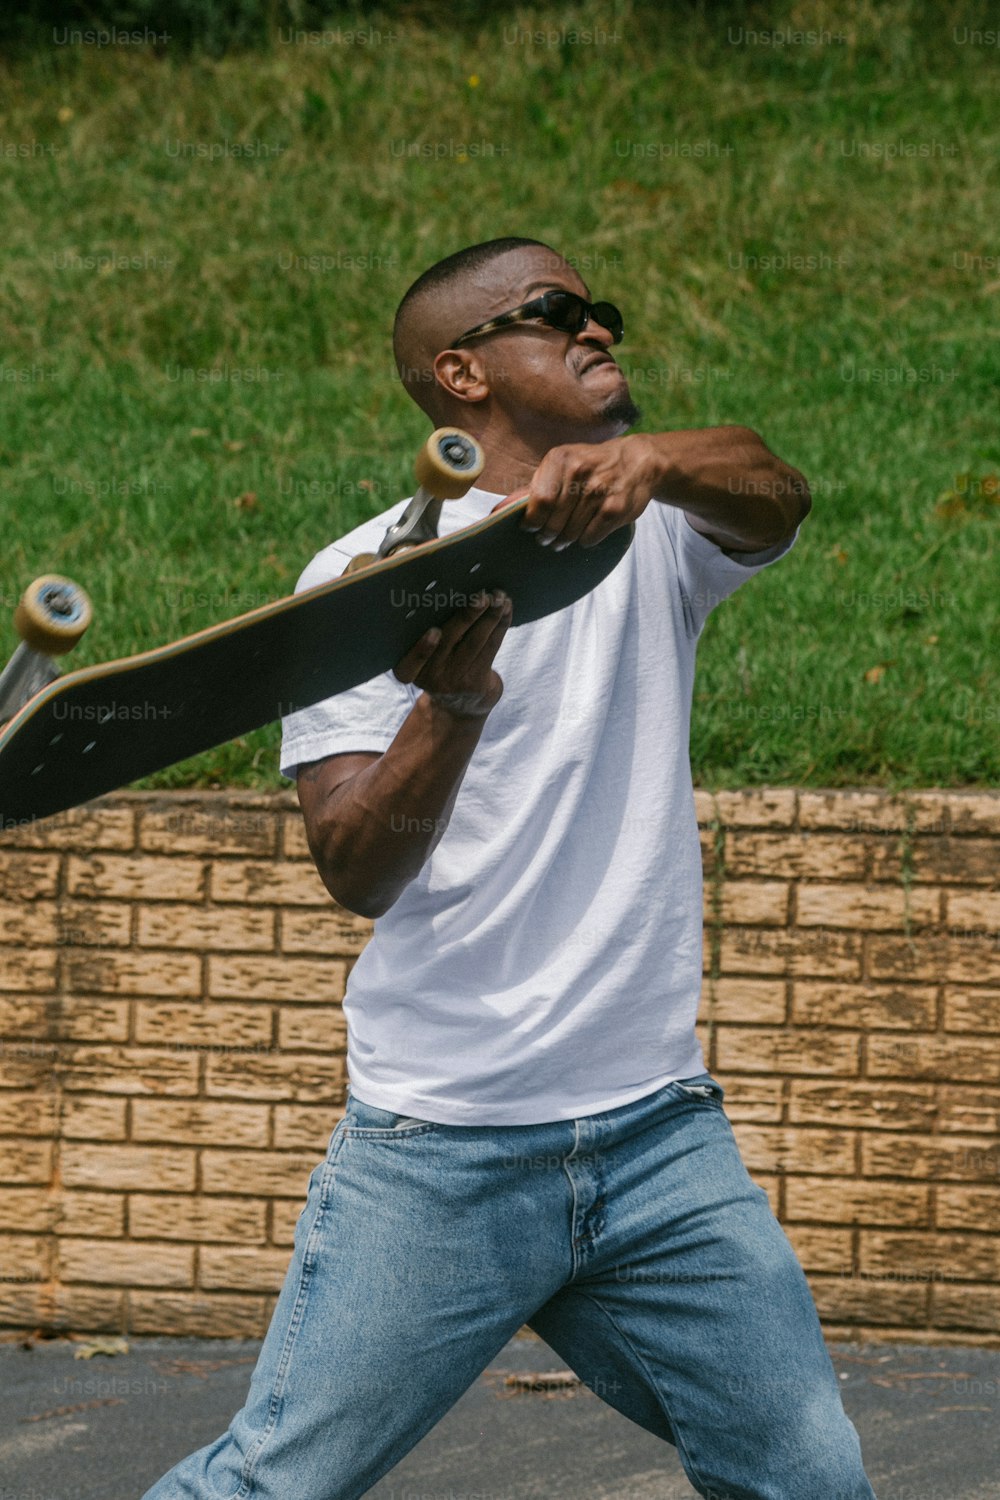 ein Mann, der ein Skateboard in der rechten Hand hält